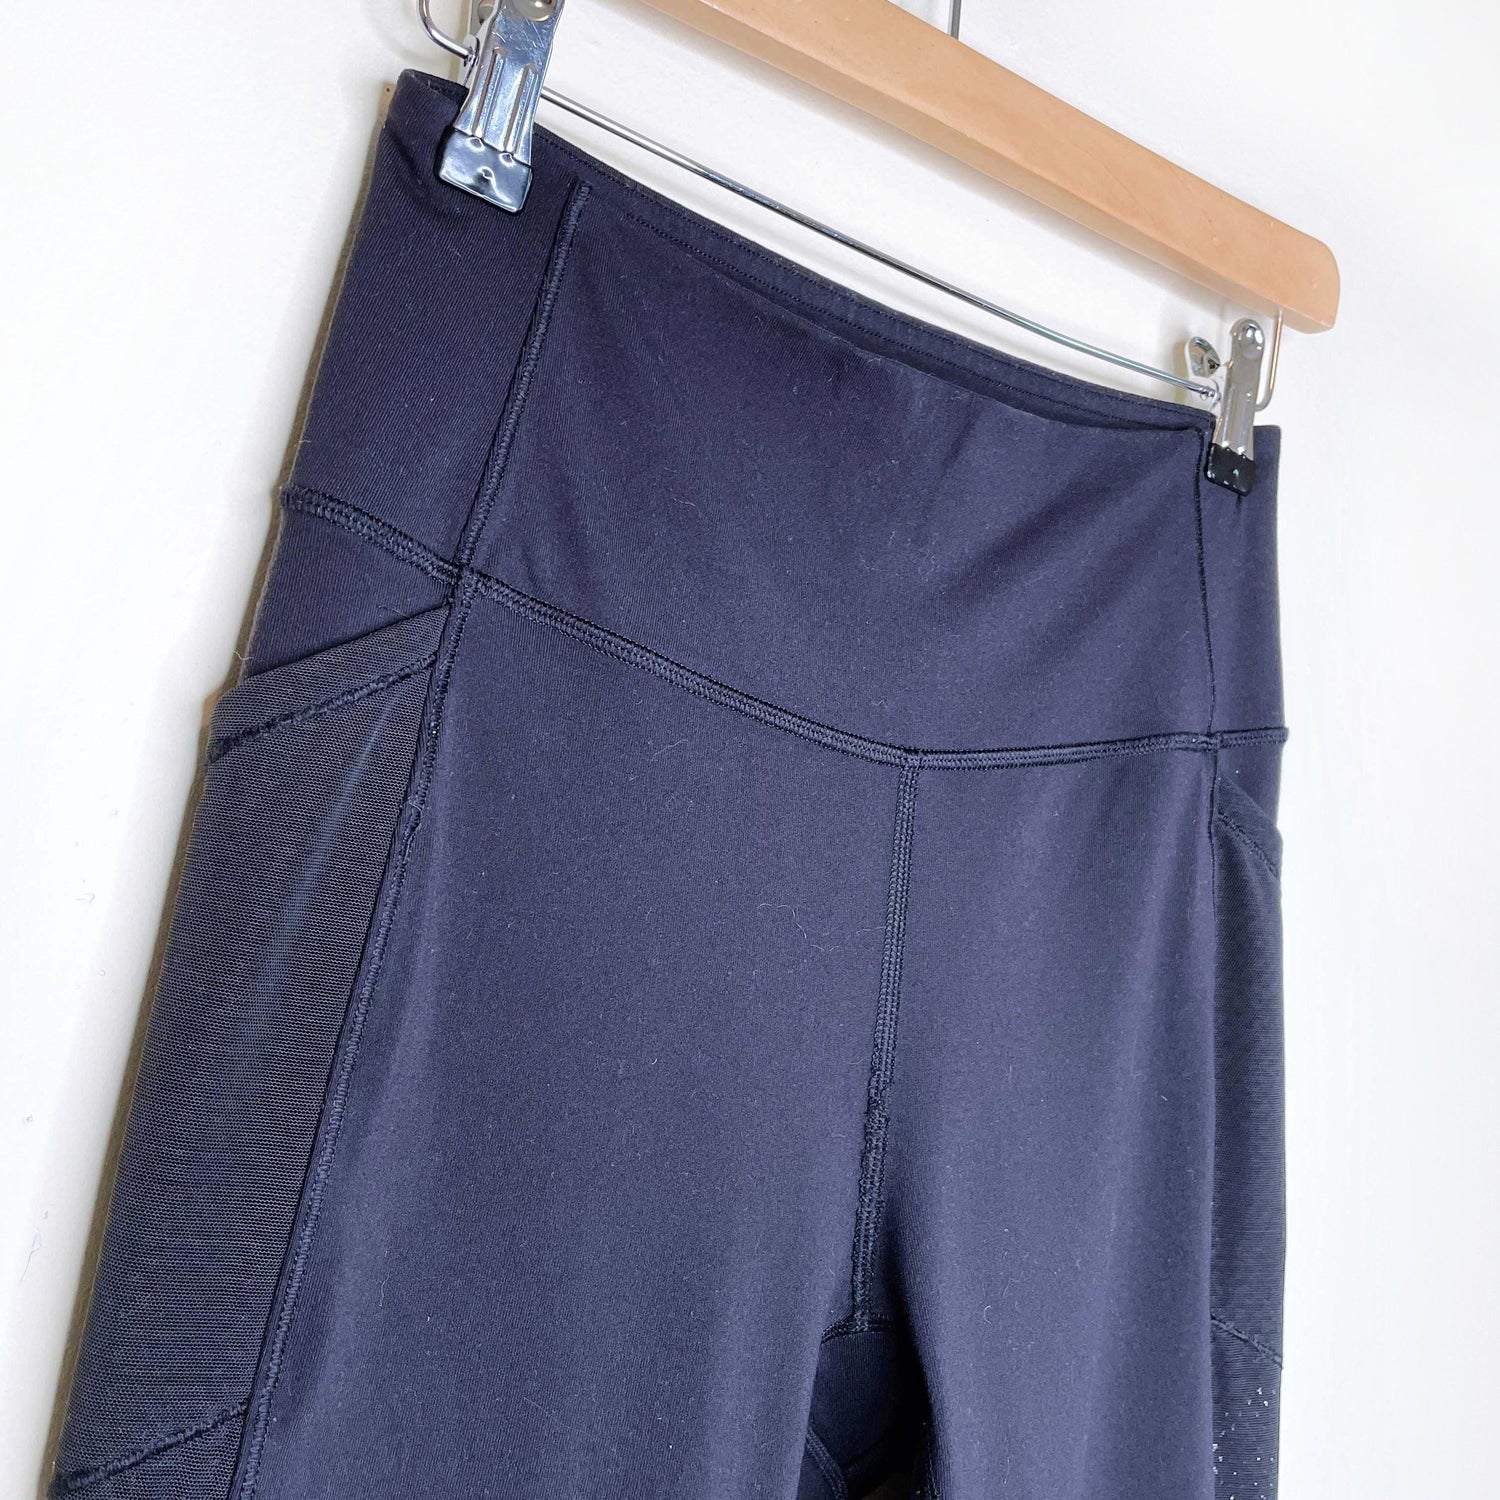 lululemon black wunder under dot mesh pocket leggings - size 2/4